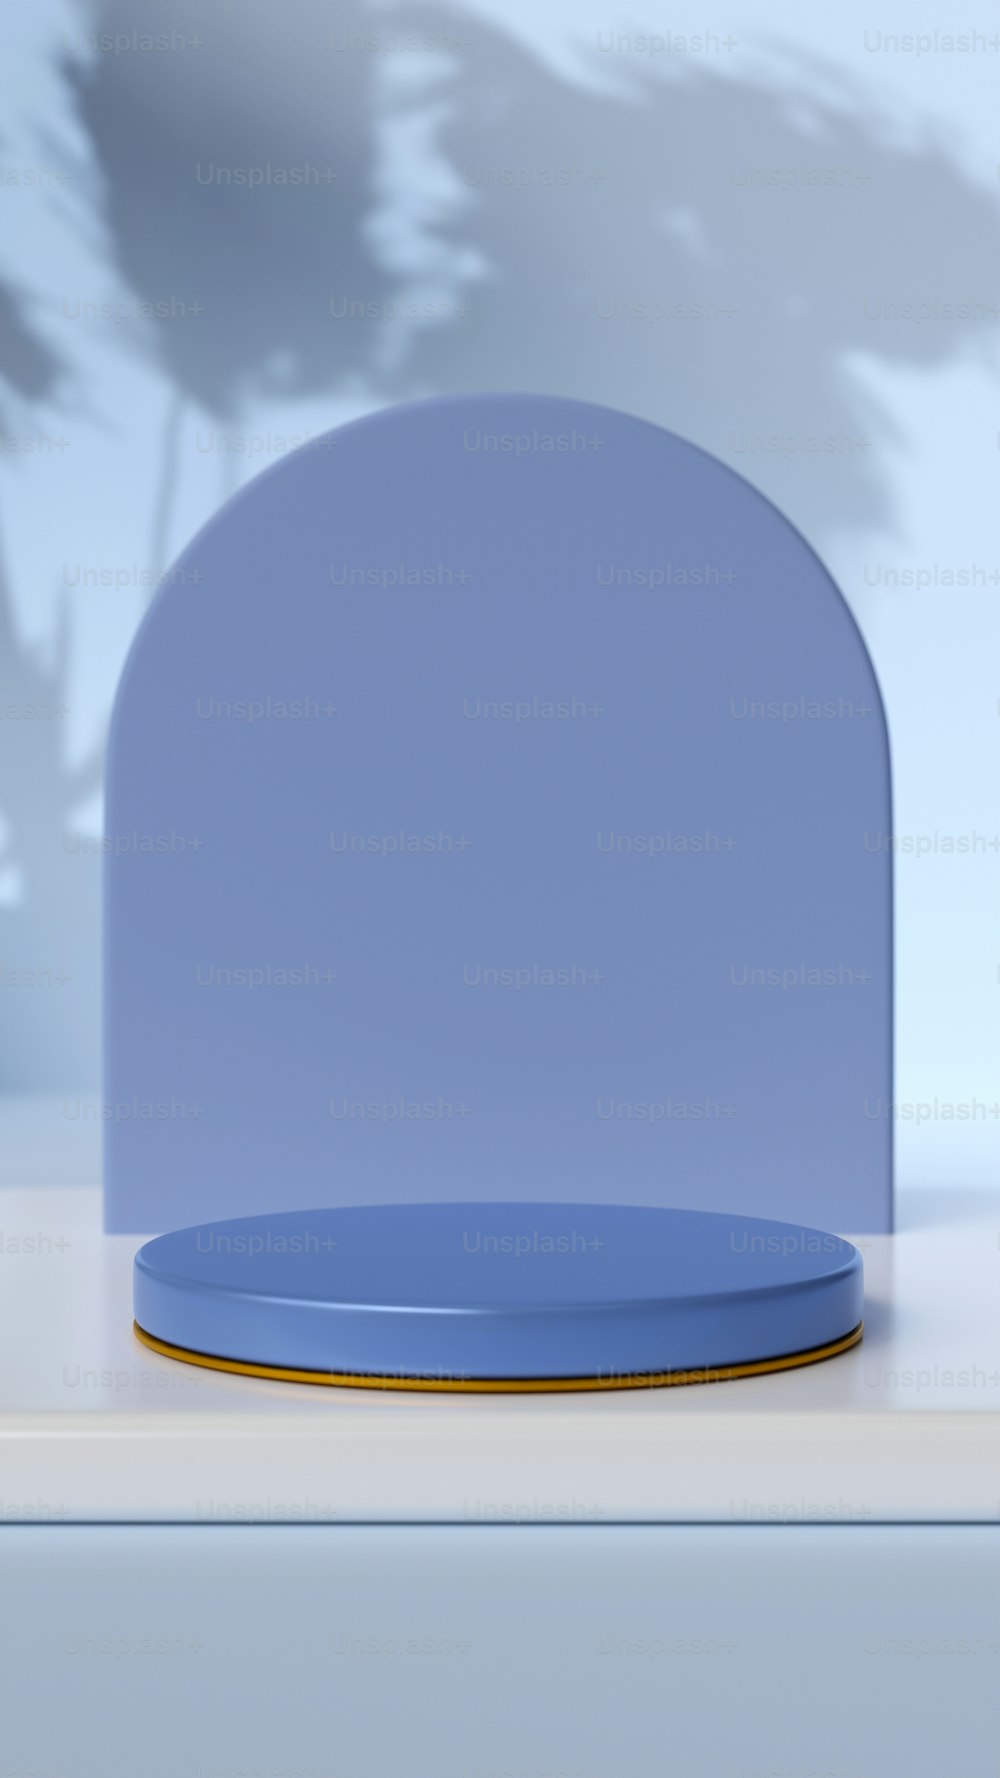 Un plato azul sentado encima de una mesa blanca